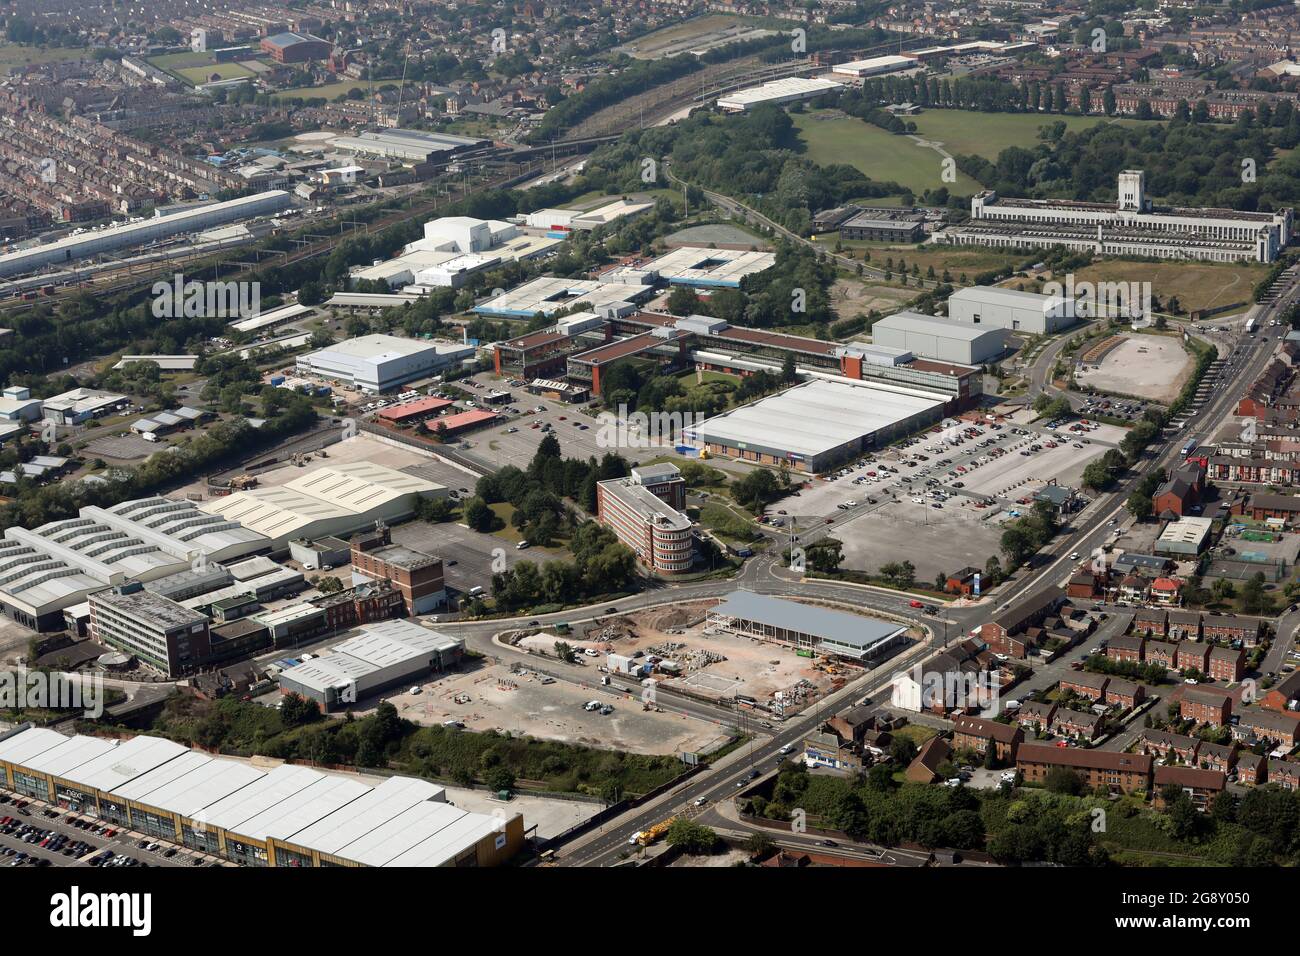 Vue aérienne sur le Liverpool innovation Park et l'ancien bâtiment Littlewoods (long bâtiment blanc) Banque D'Images